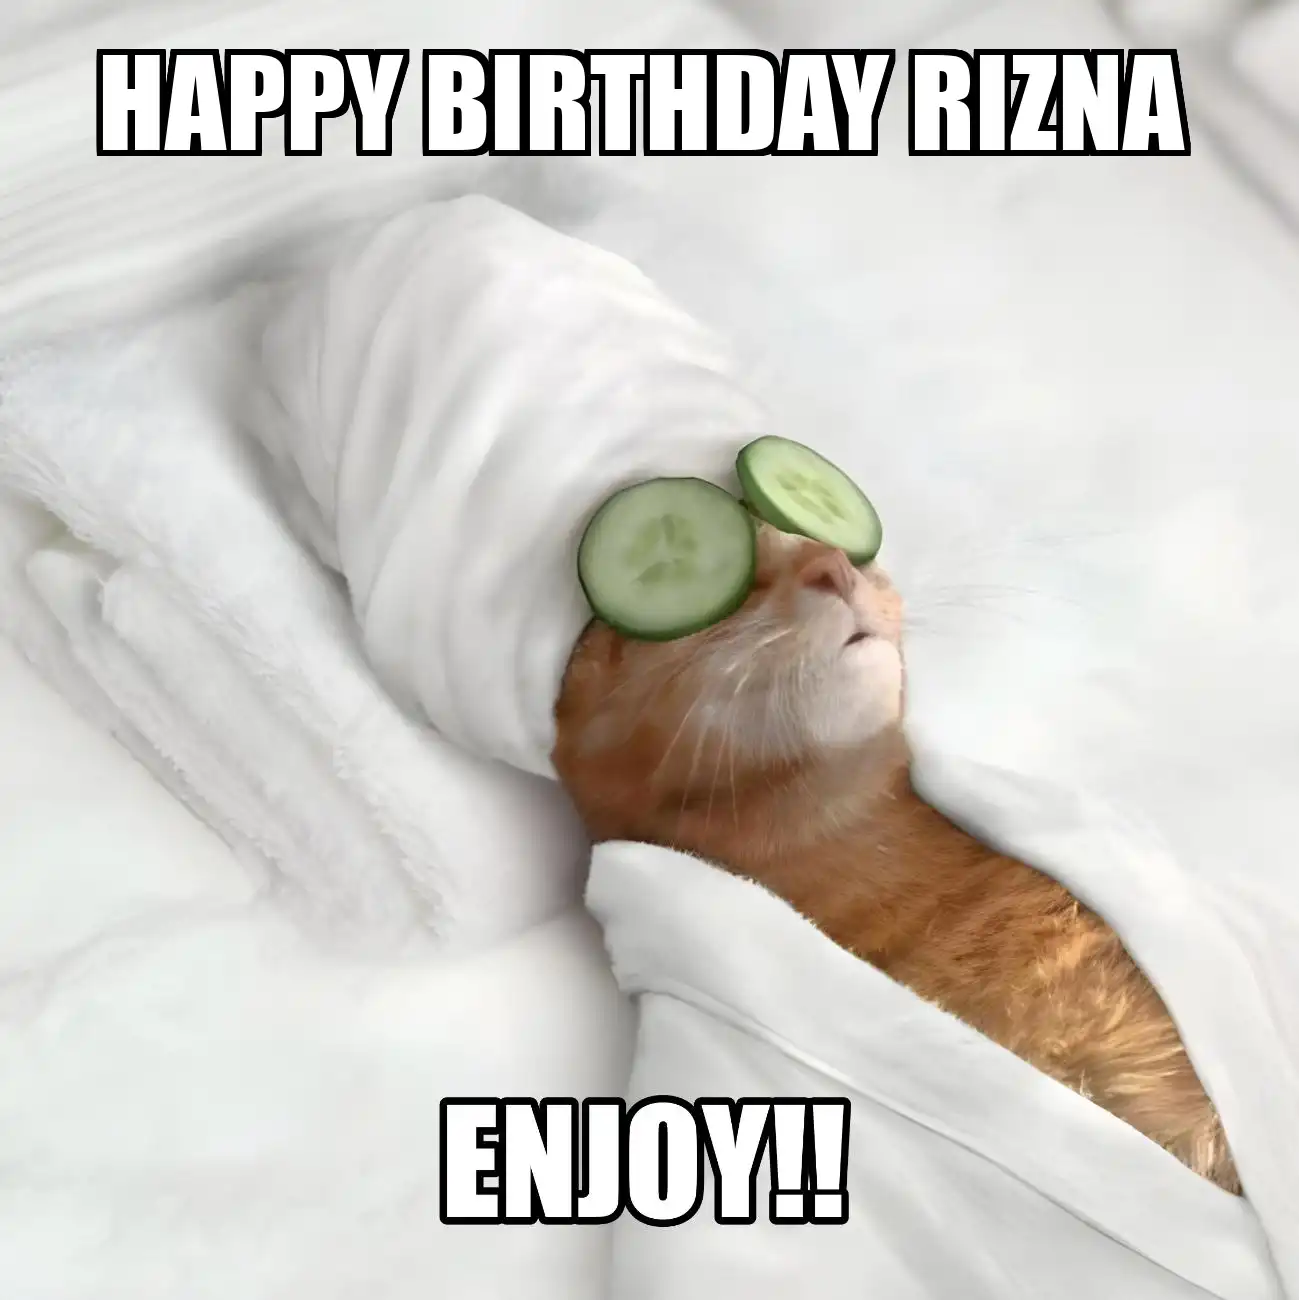 Happy Birthday Rizna Enjoy Cat Meme